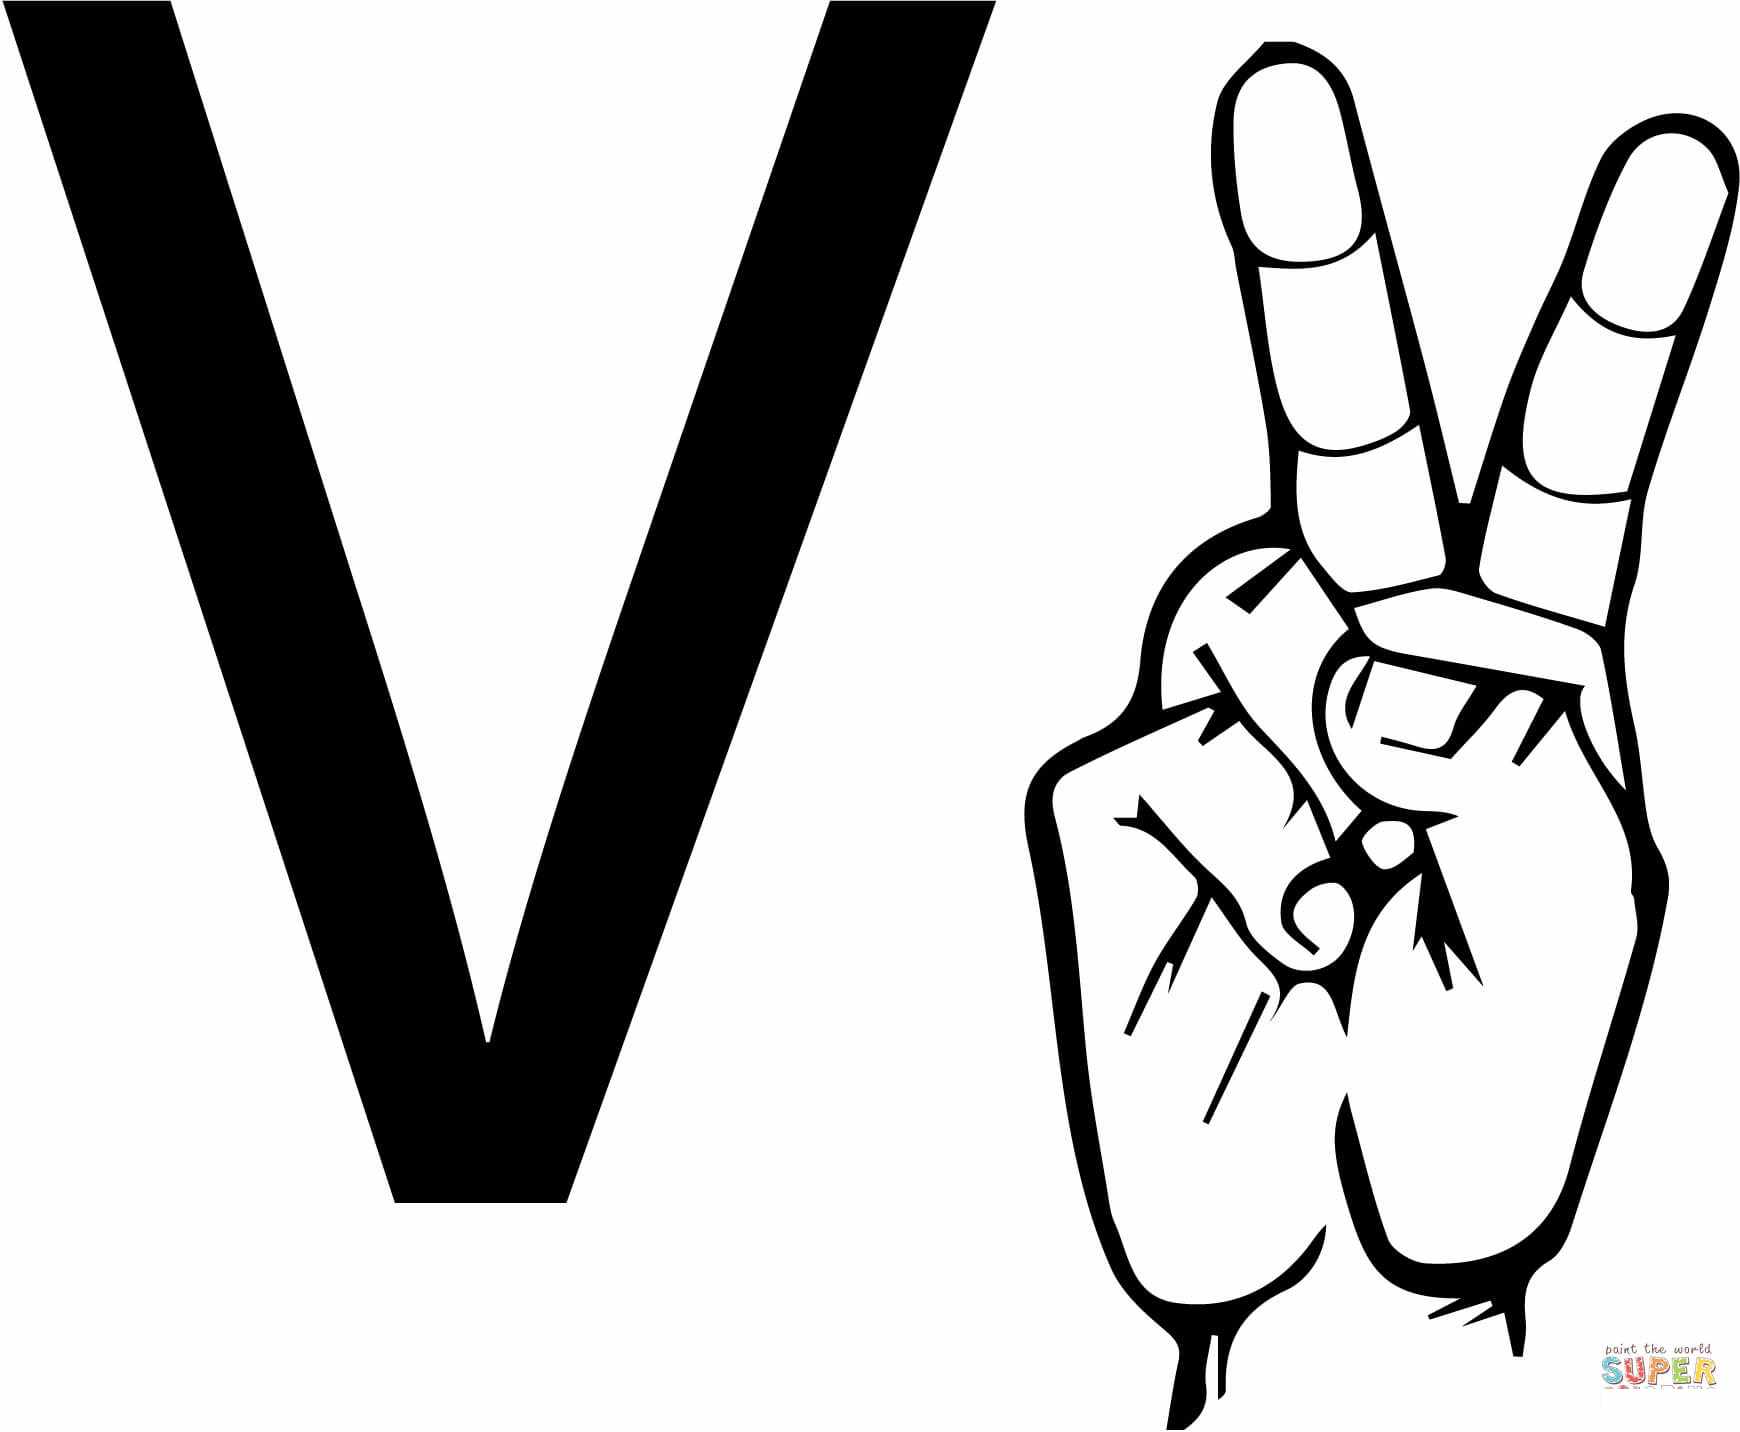 ASL-viittomakielikirje V